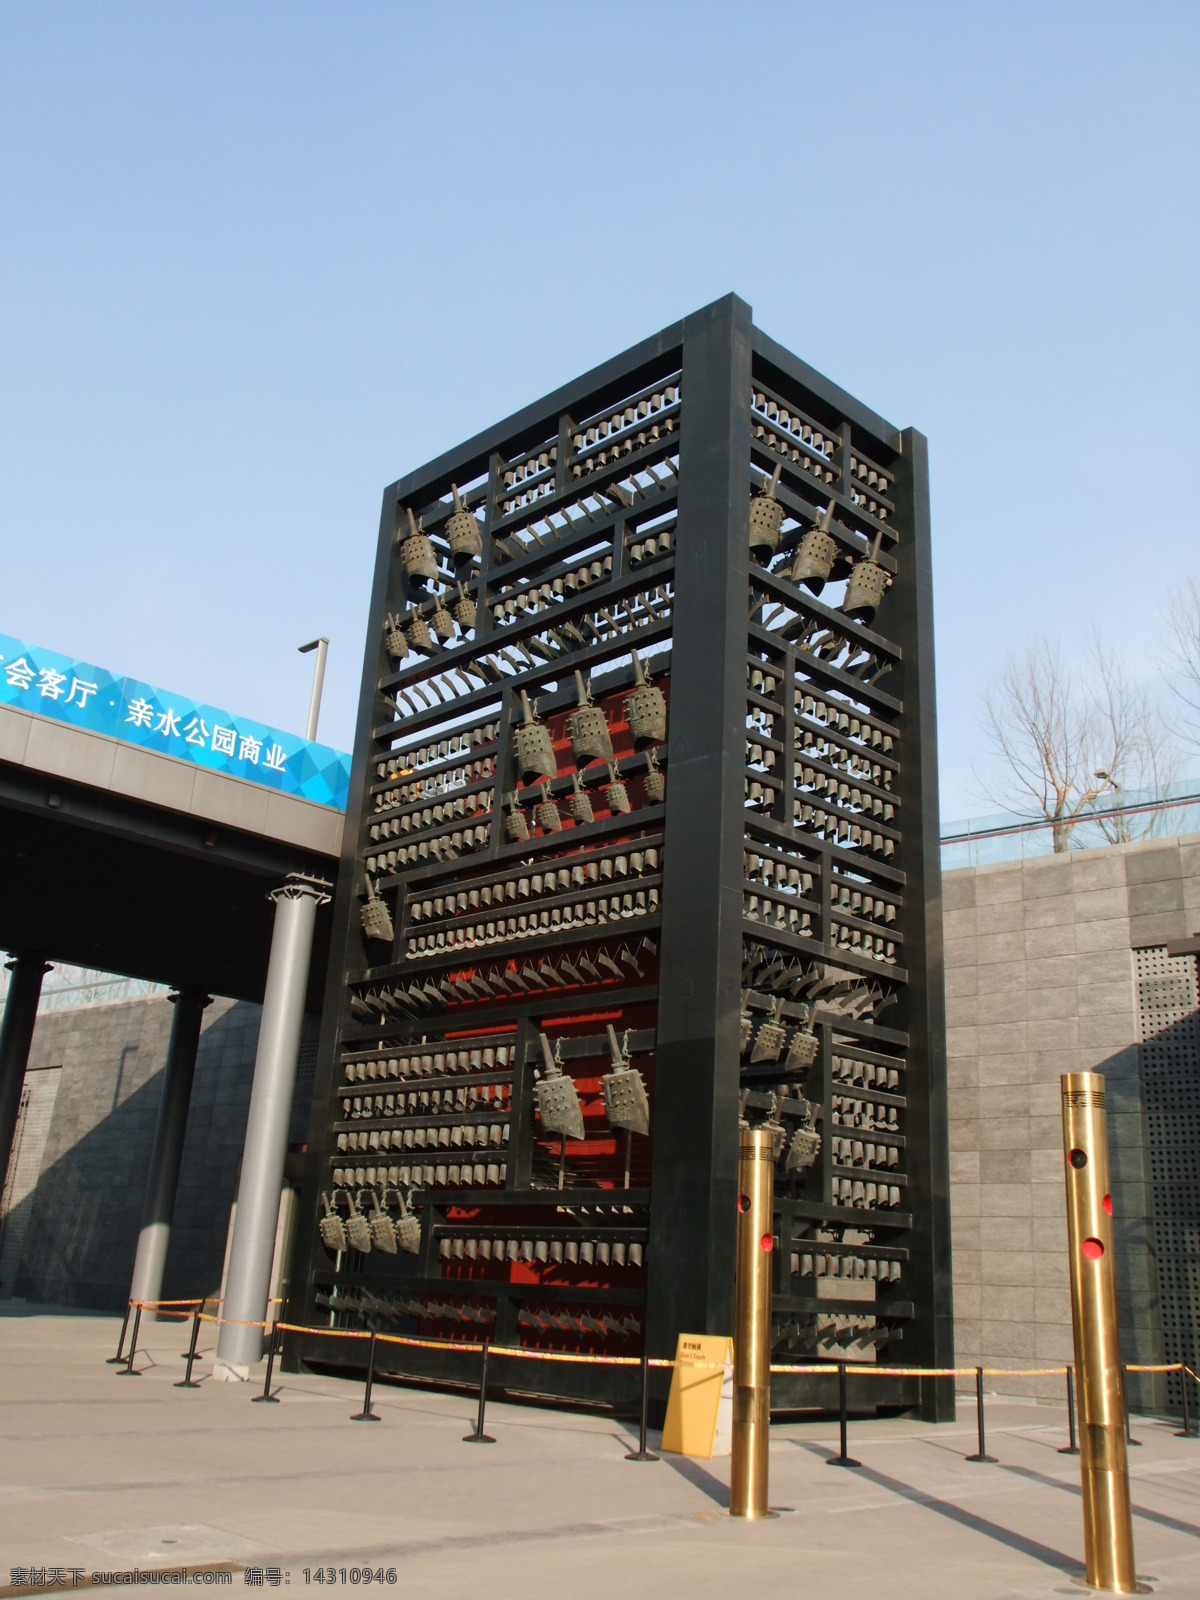 编钟 艺术展示 奥运 艺术 北京奥运场馆 奥林匹克公园 雕塑 北京旅游 首都摄影 国内旅游 旅游摄影